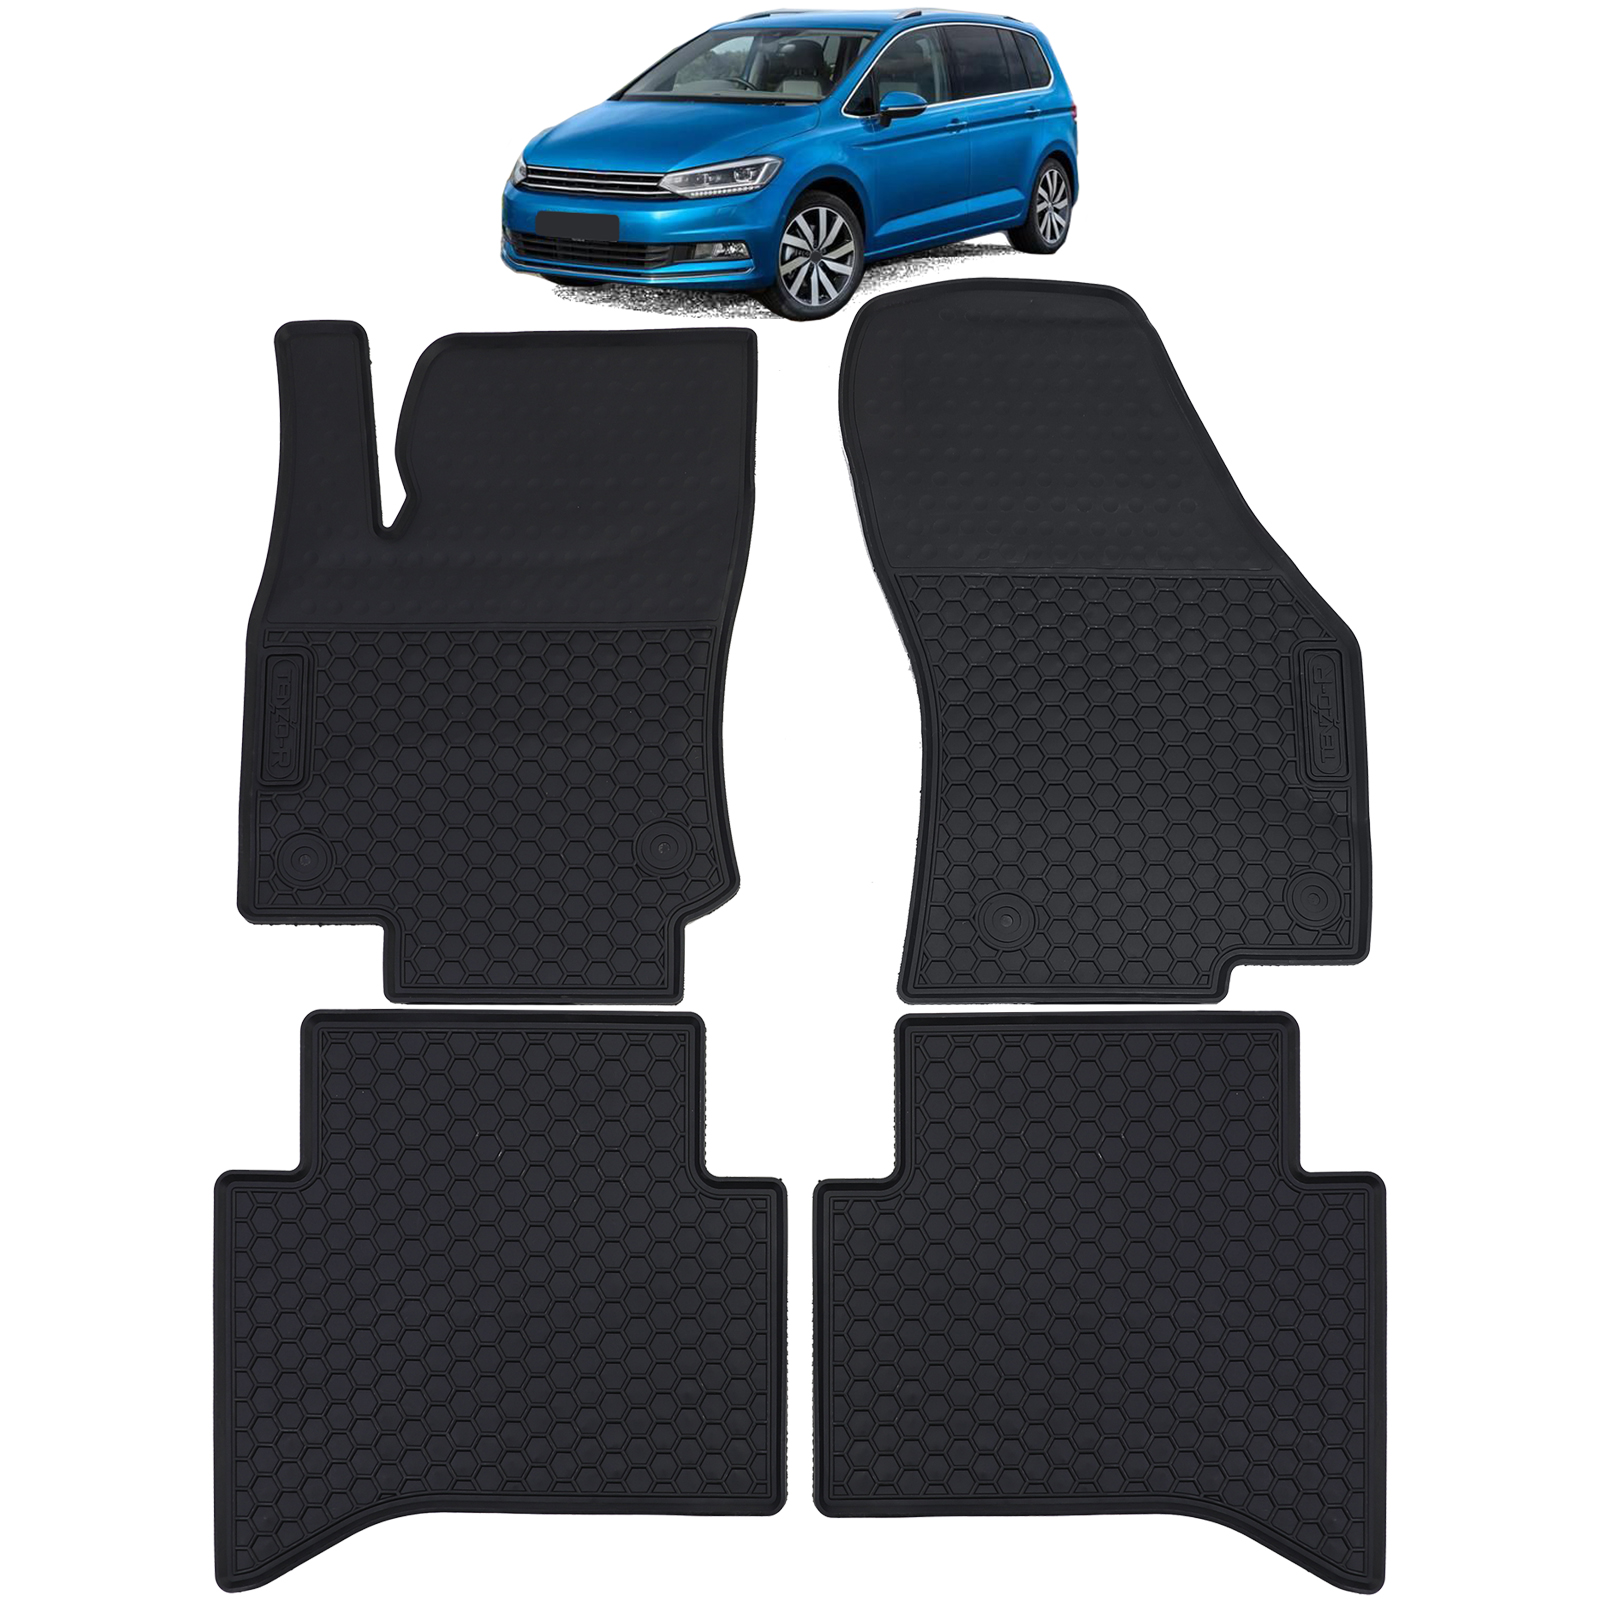 Auto Gummi Fußmatten Schwarz Premium Set für VW Touran II 5T ab